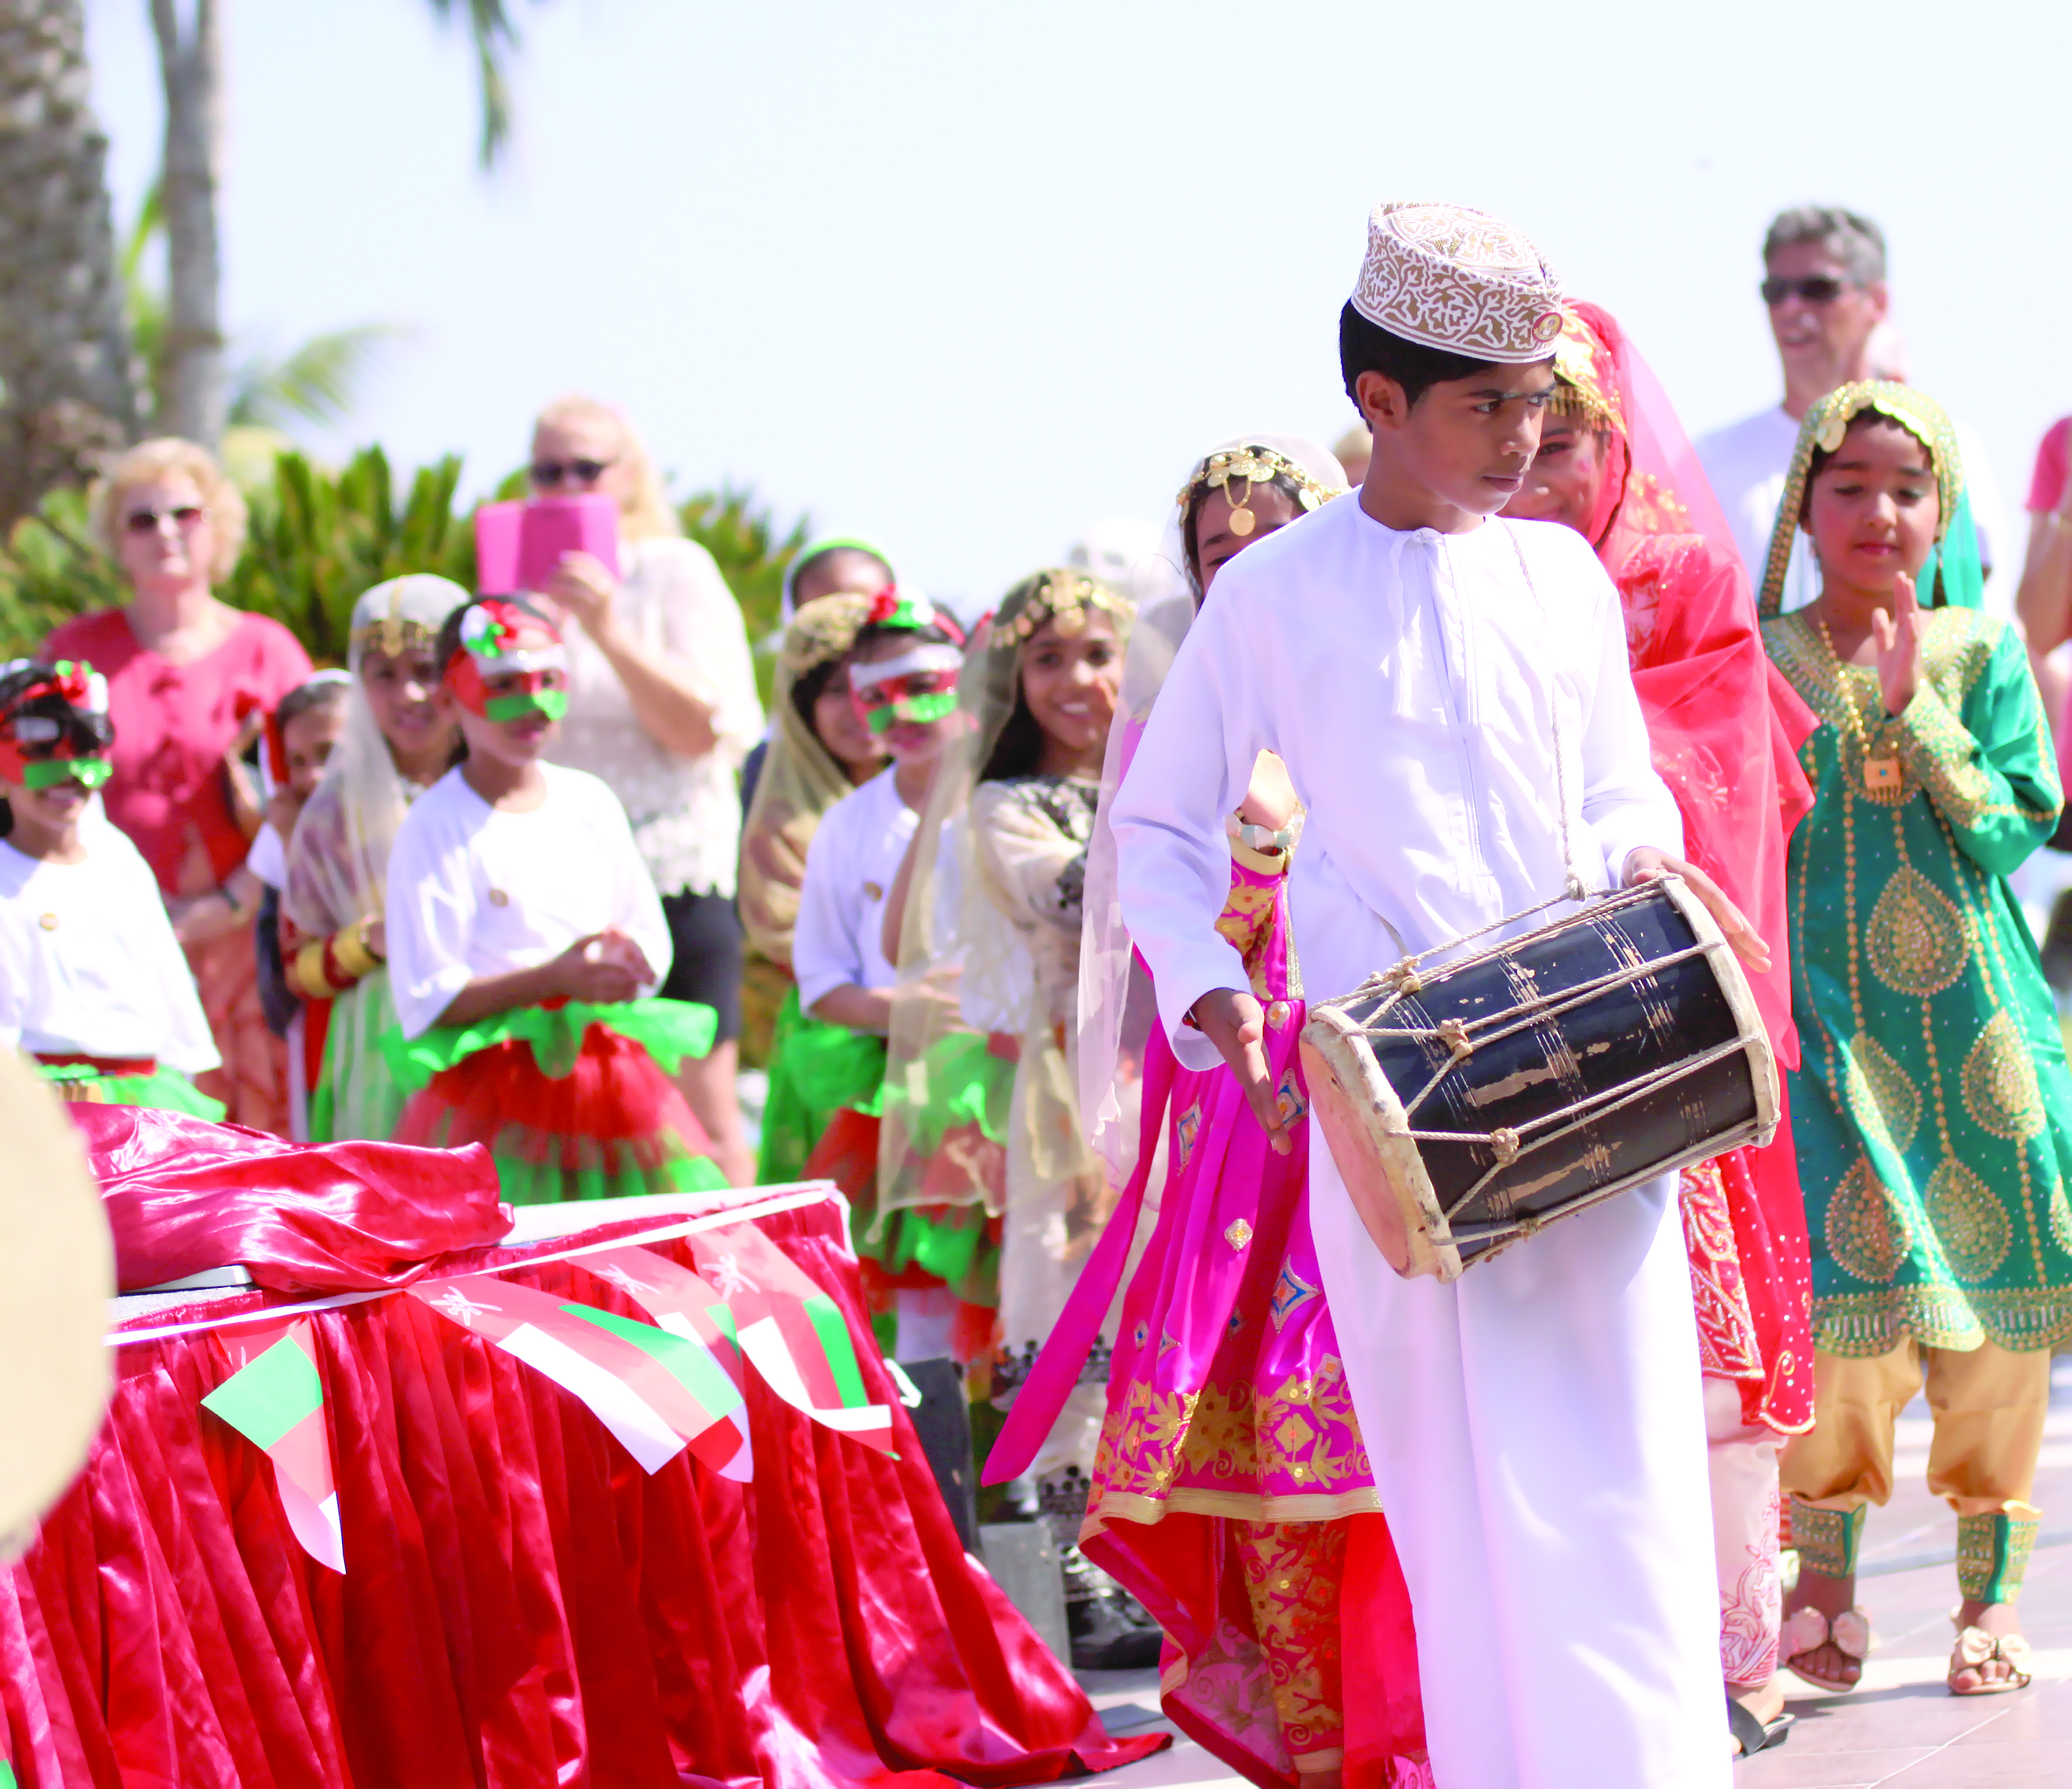 منتجع شانغريلا بر الجصة يحتفل بالعيد الوطني اليوم